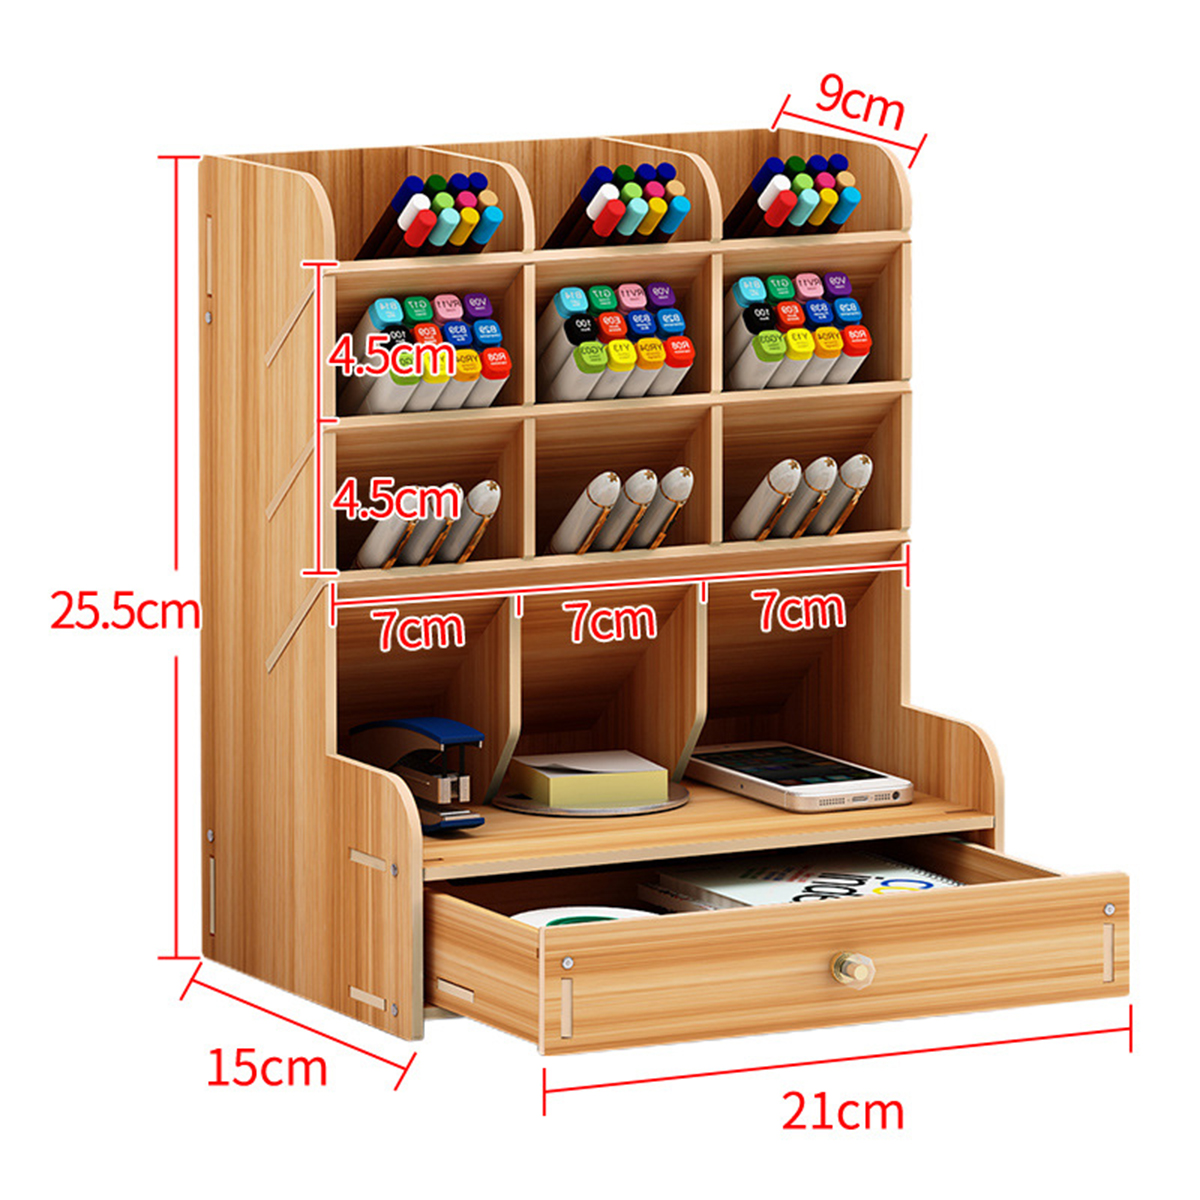 Wooden-Desk-Organizer-Multi-Functional-DIY-Pen-Holder-Box-Cell-Phone-Holder-Desktop-Stationary-Home--1585522-8